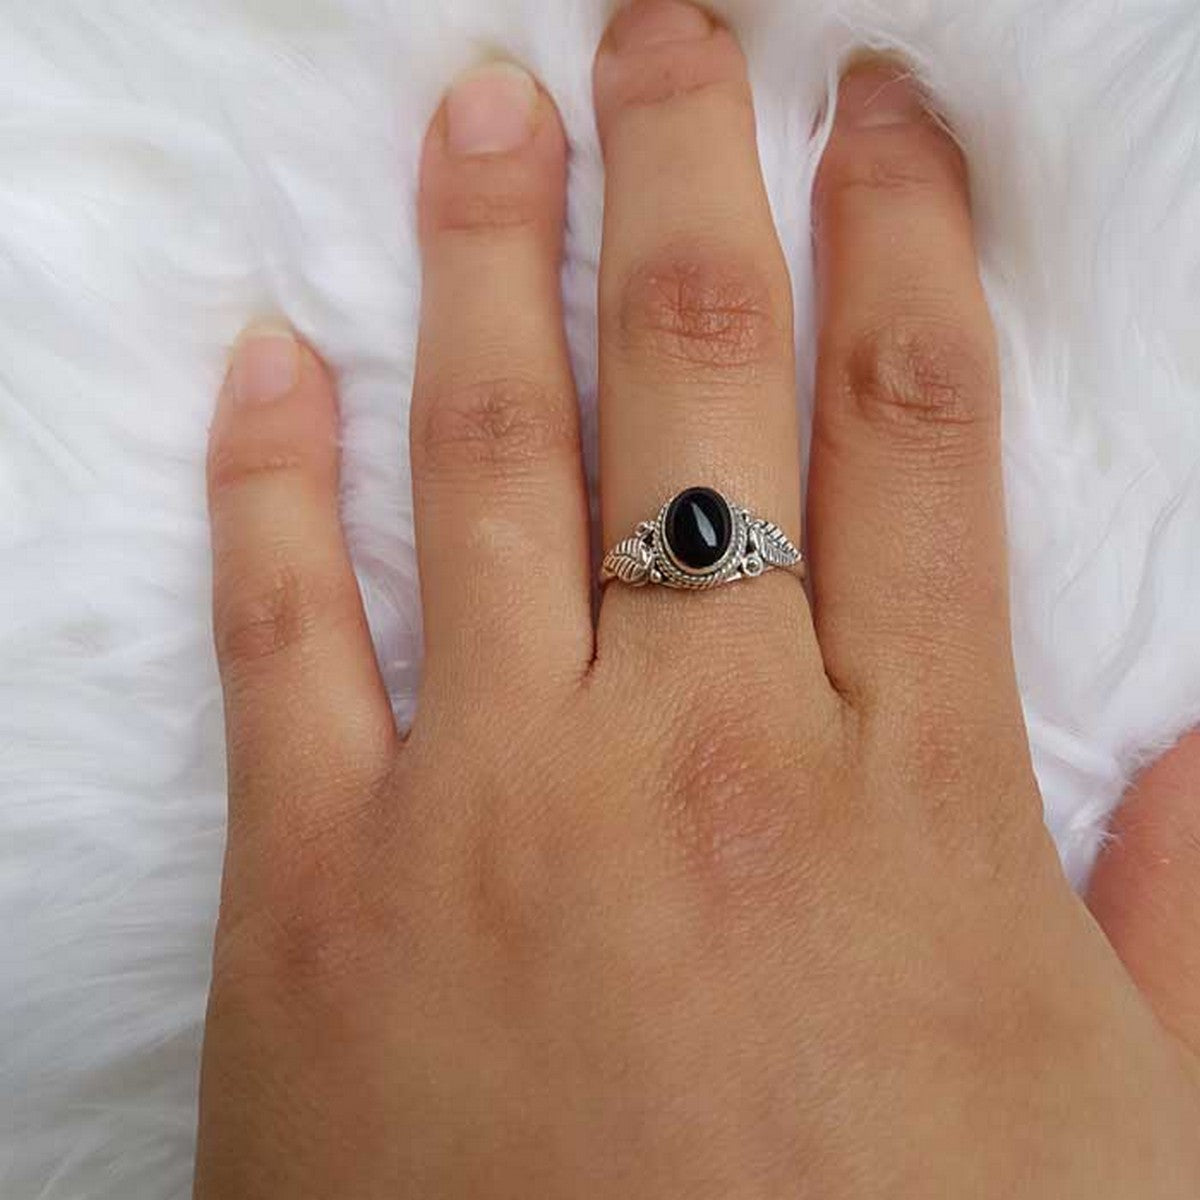 Laural | Ring 925 zilver met zwarte onyx